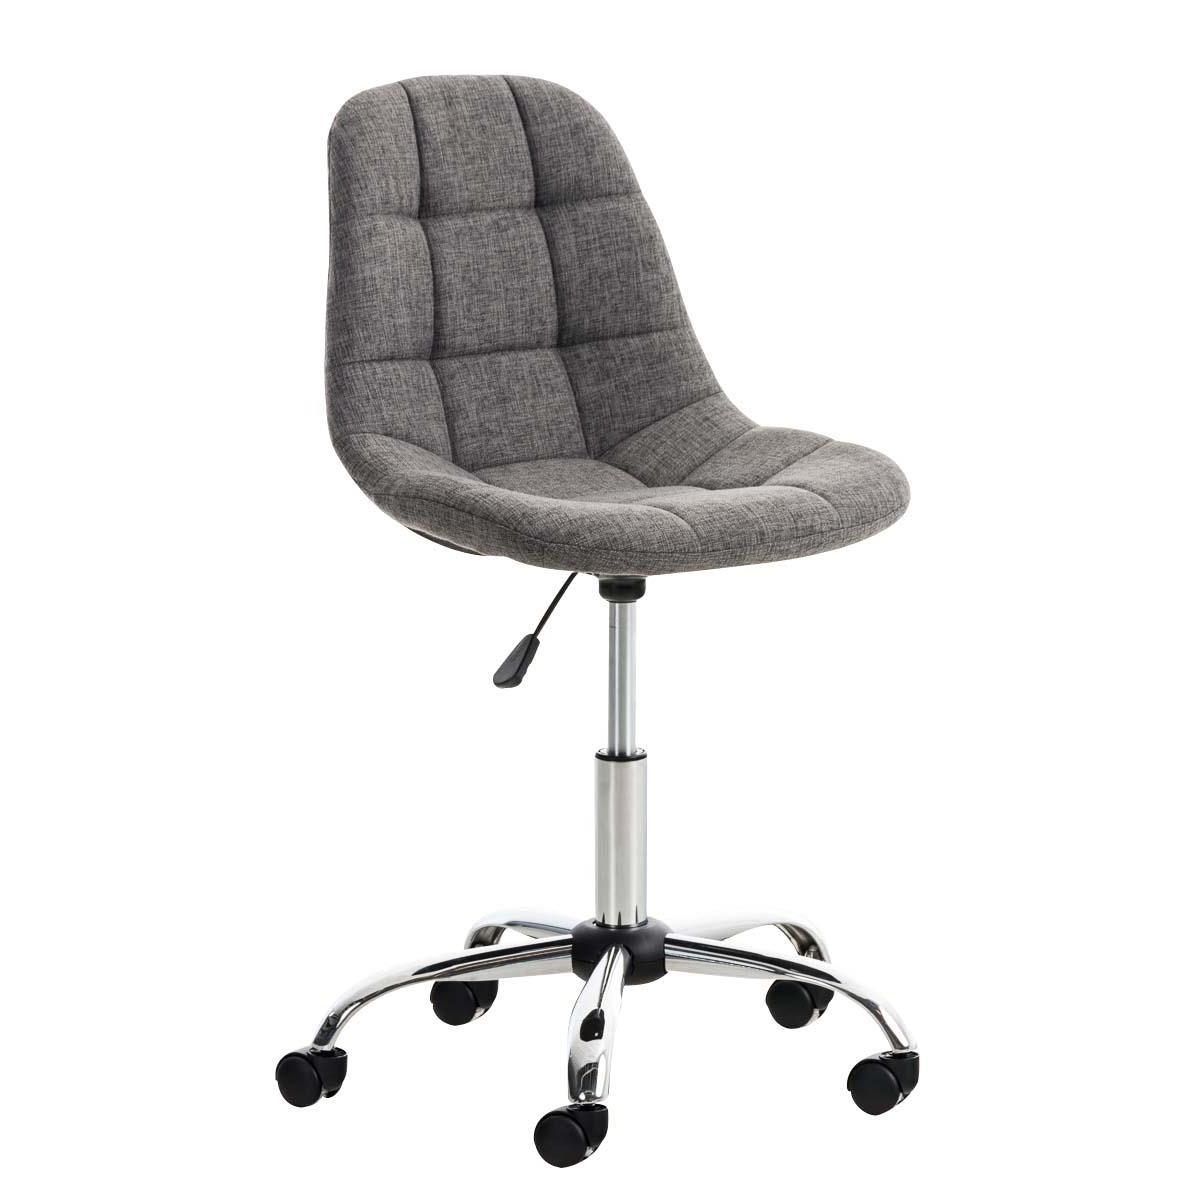 Chaise de bureau EMILY, Structure métallique, Design exclusif, revêtement Tissu, Gris clair